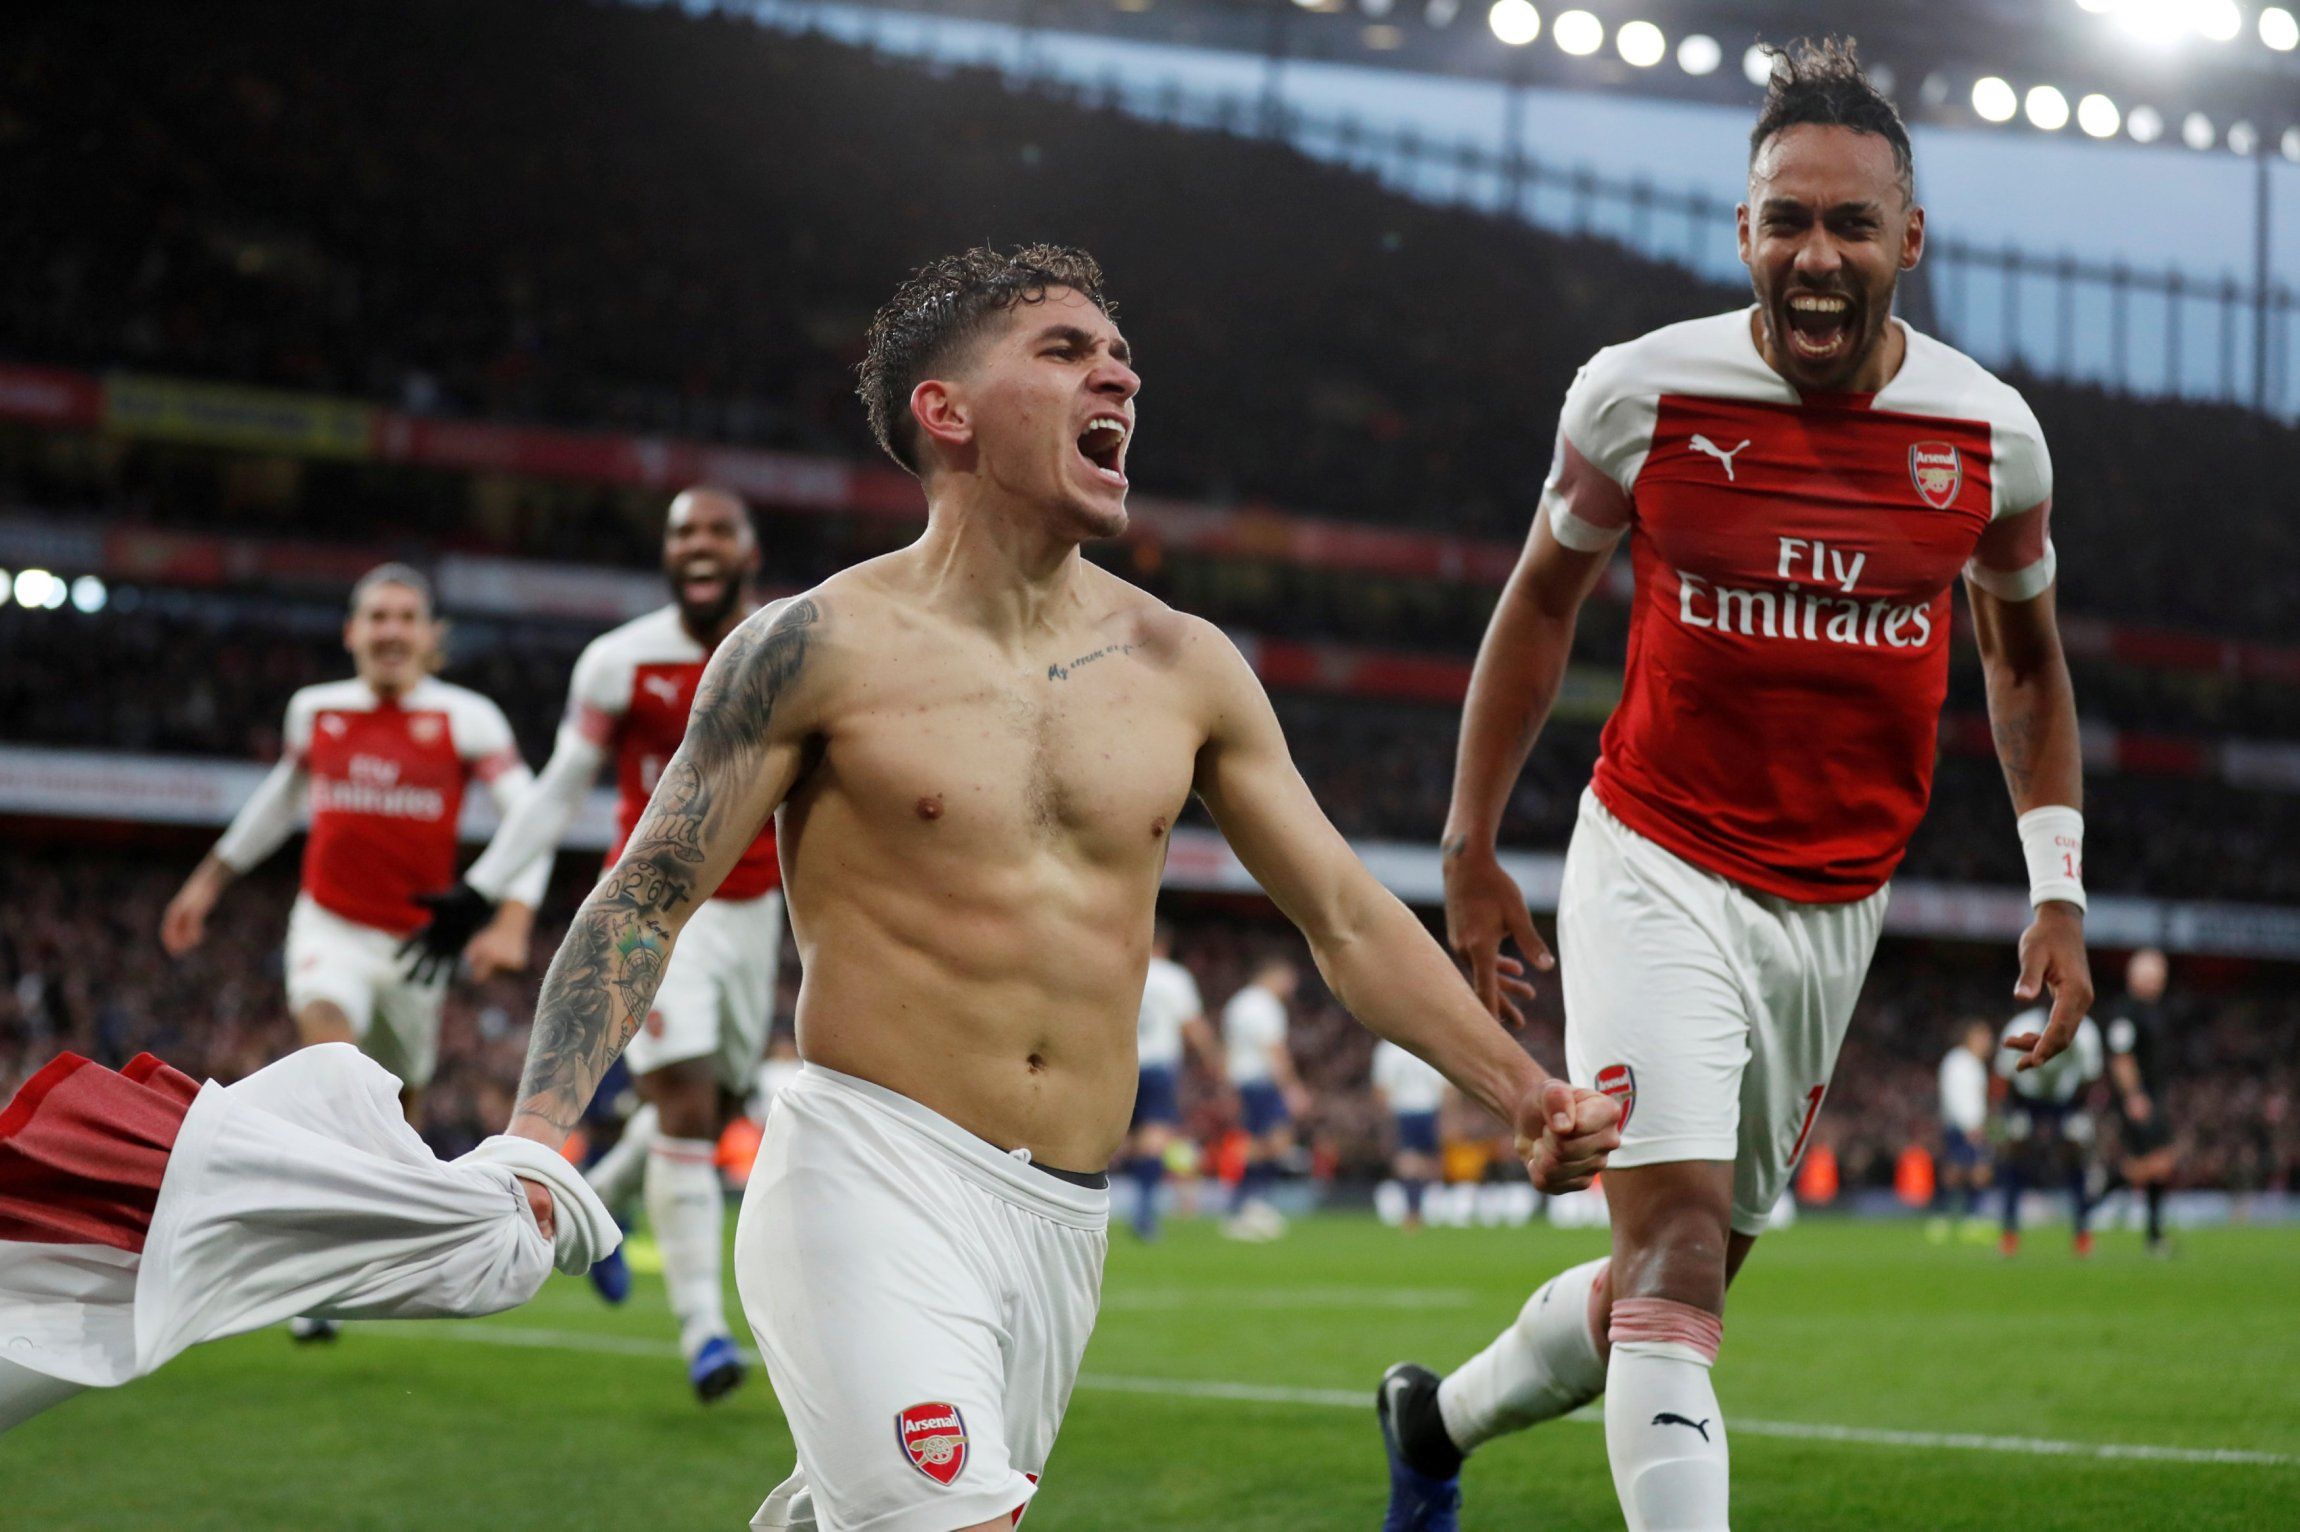 Arsenal's Lucas Torreira celebrates scoring their fourth goal vs Tottenham